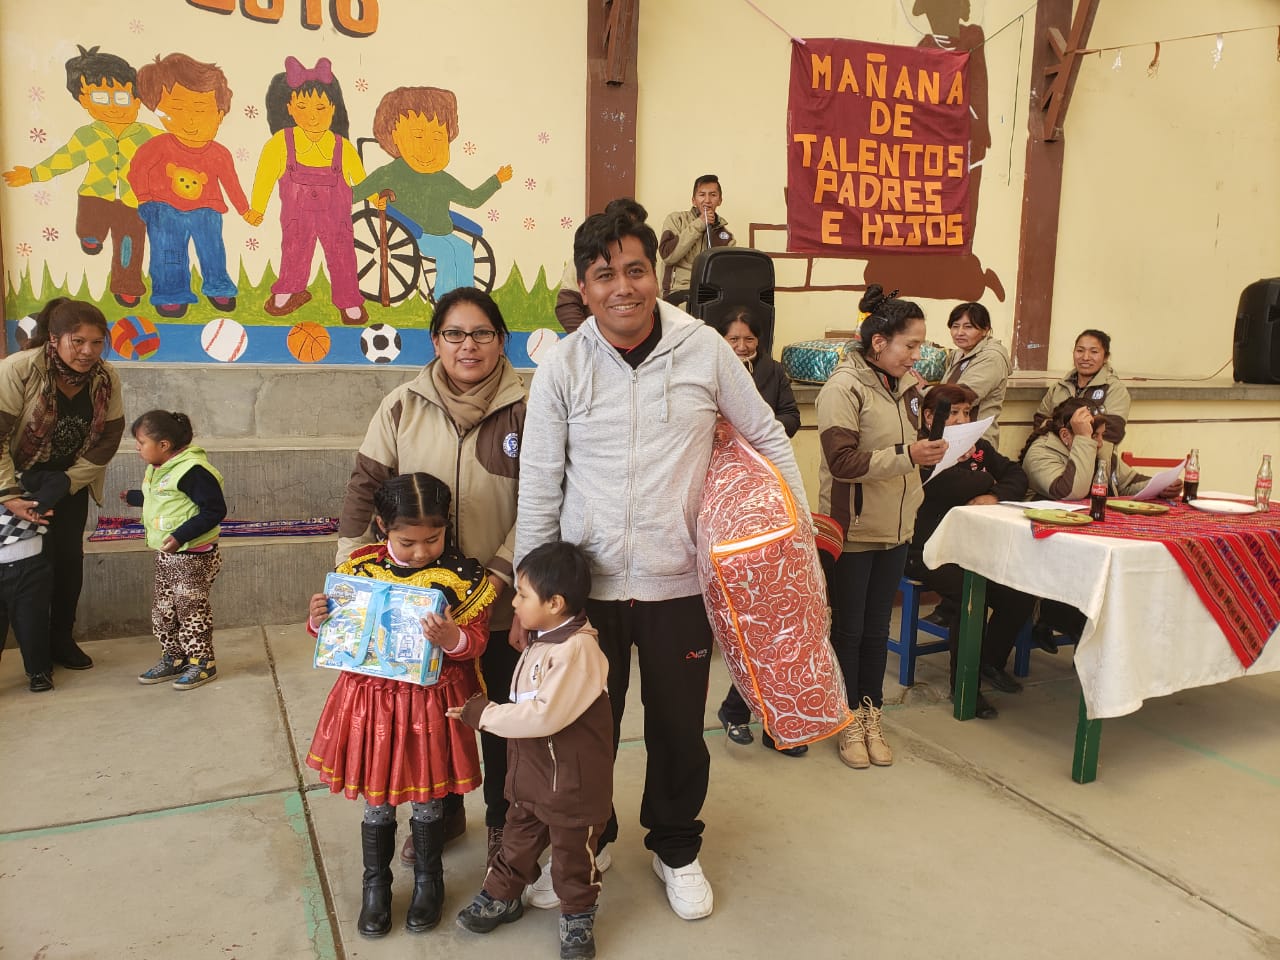 Octubre comienza con mas actividades en El Alto (Bolivia)